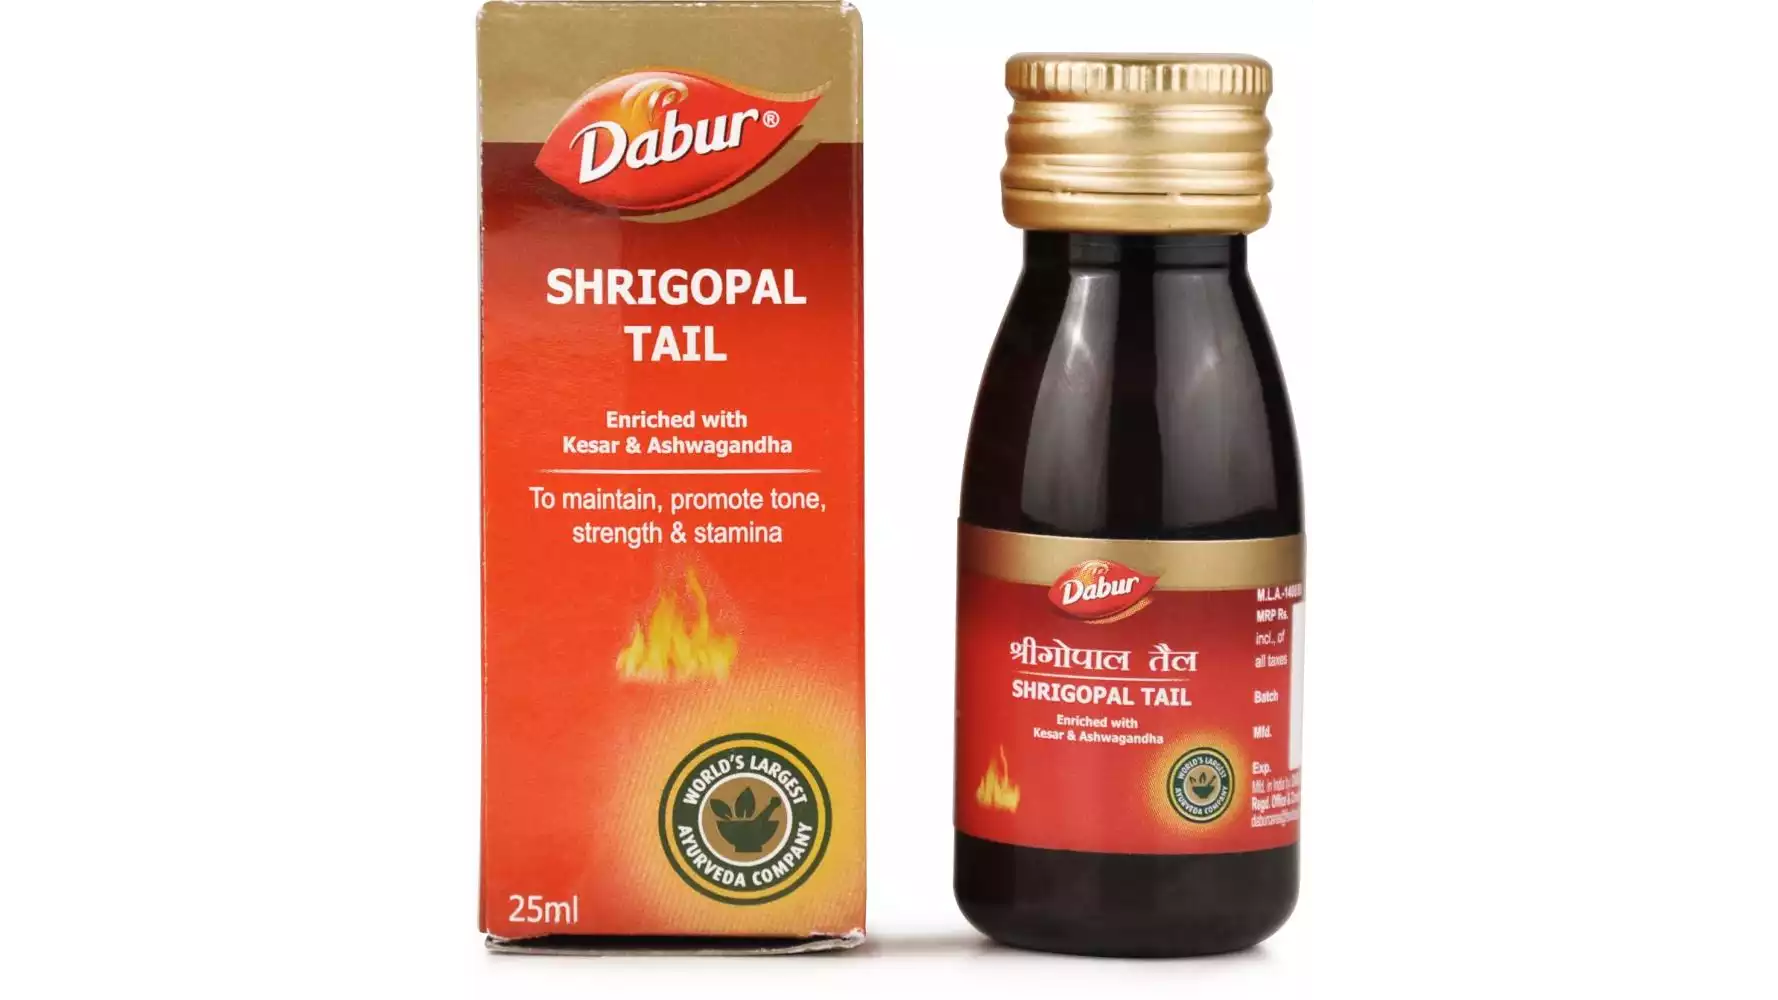 Dabur Shrigopal Tail (25ml)